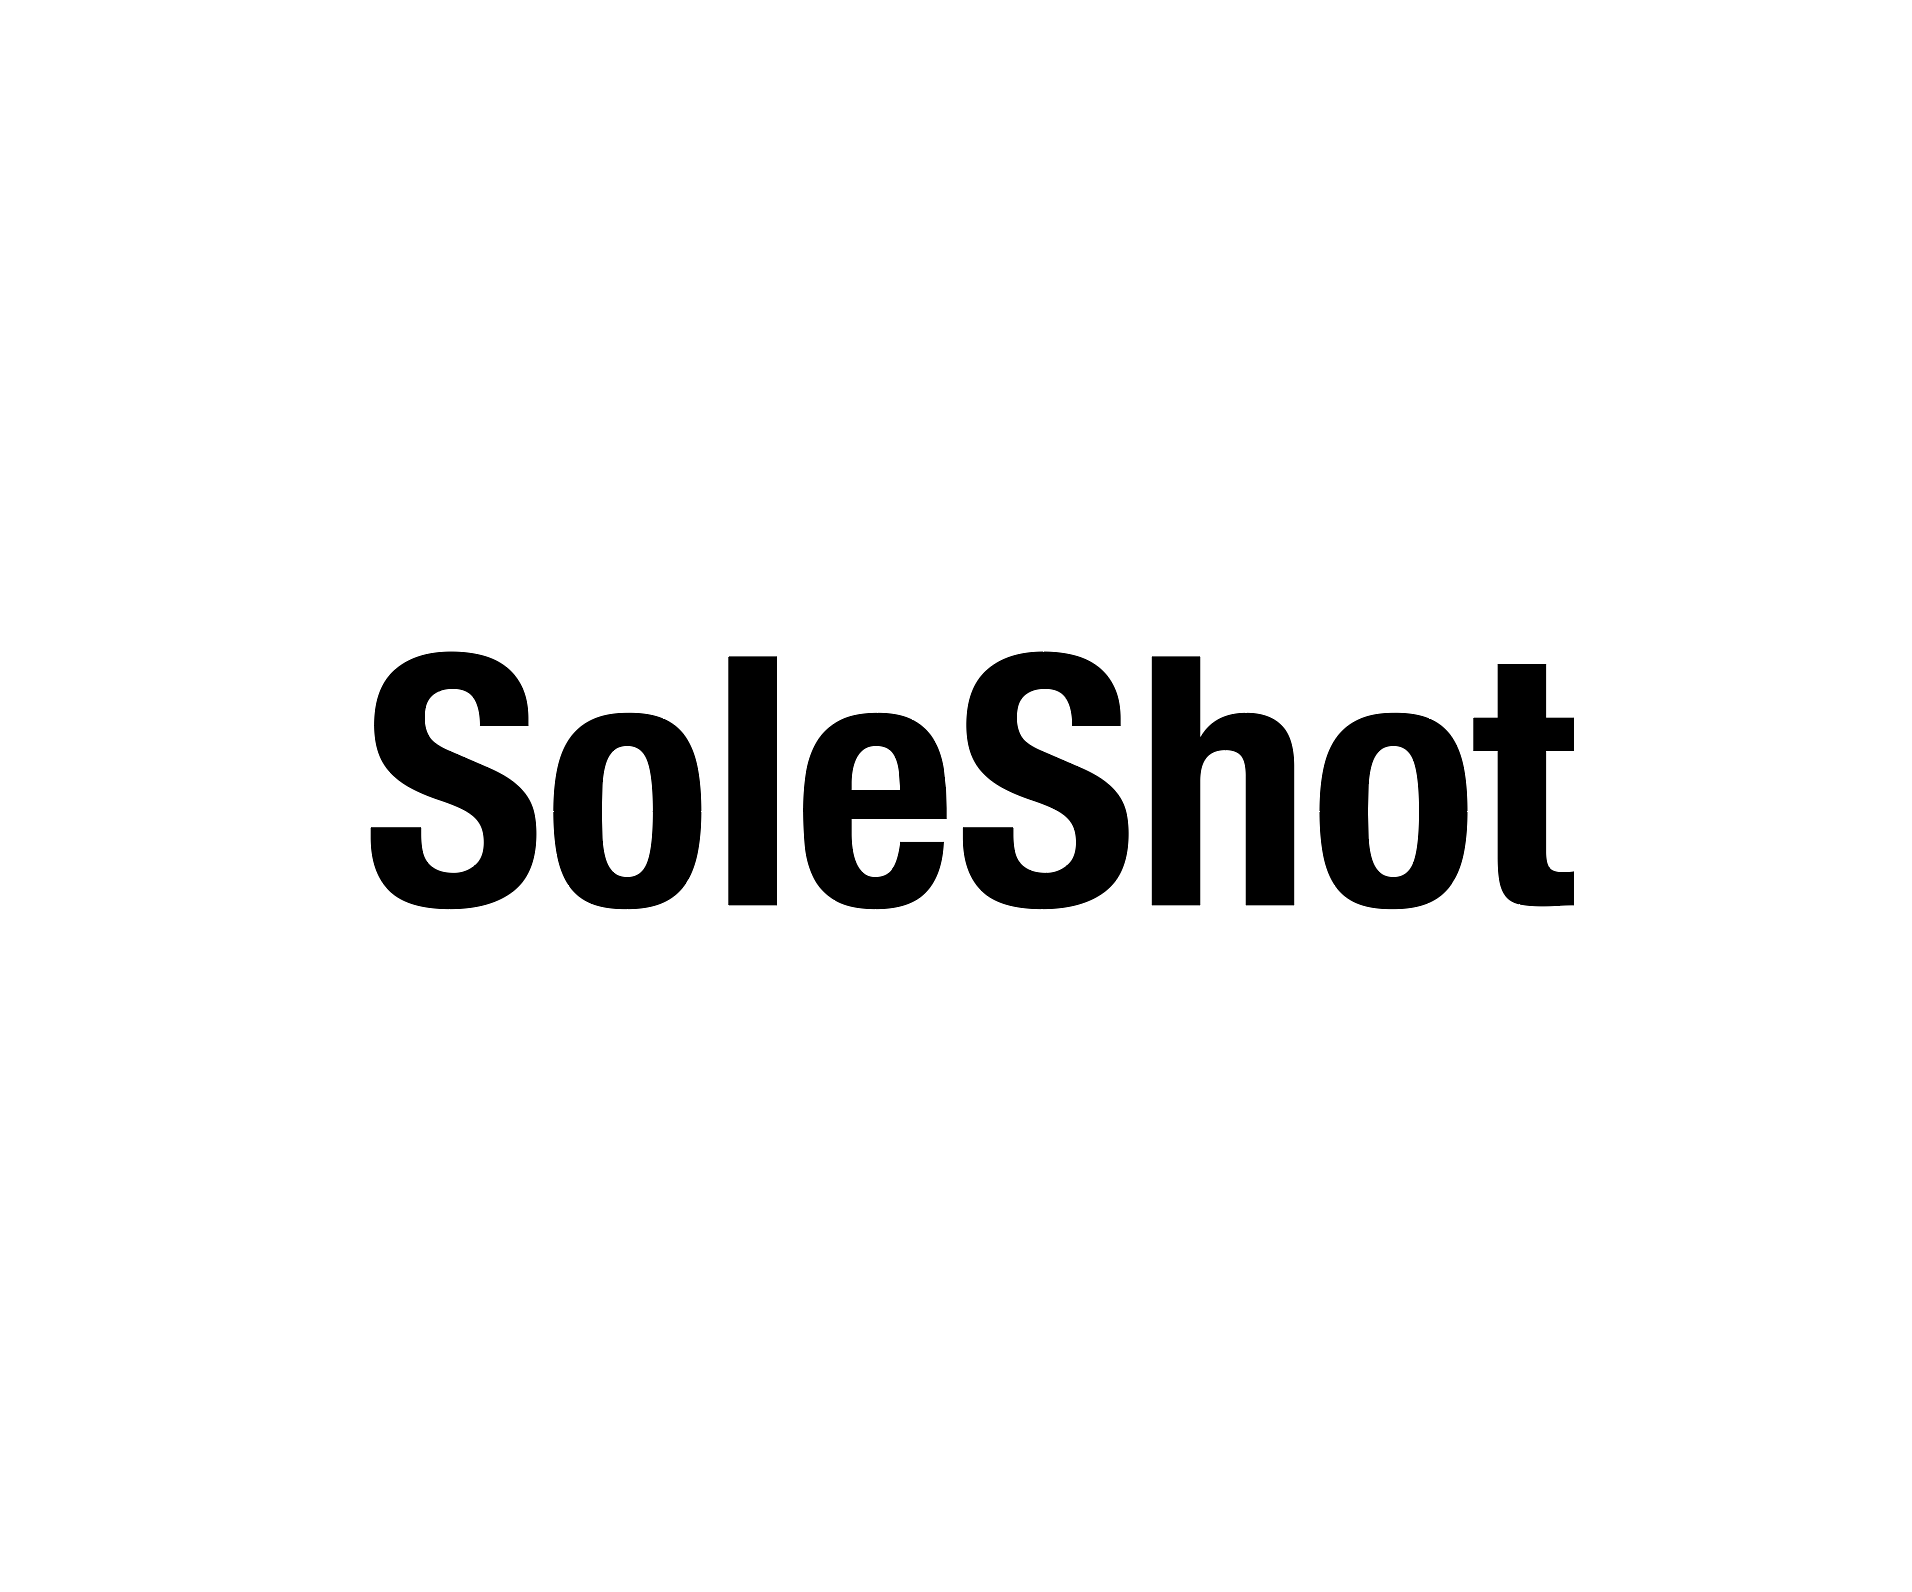 SoleShot